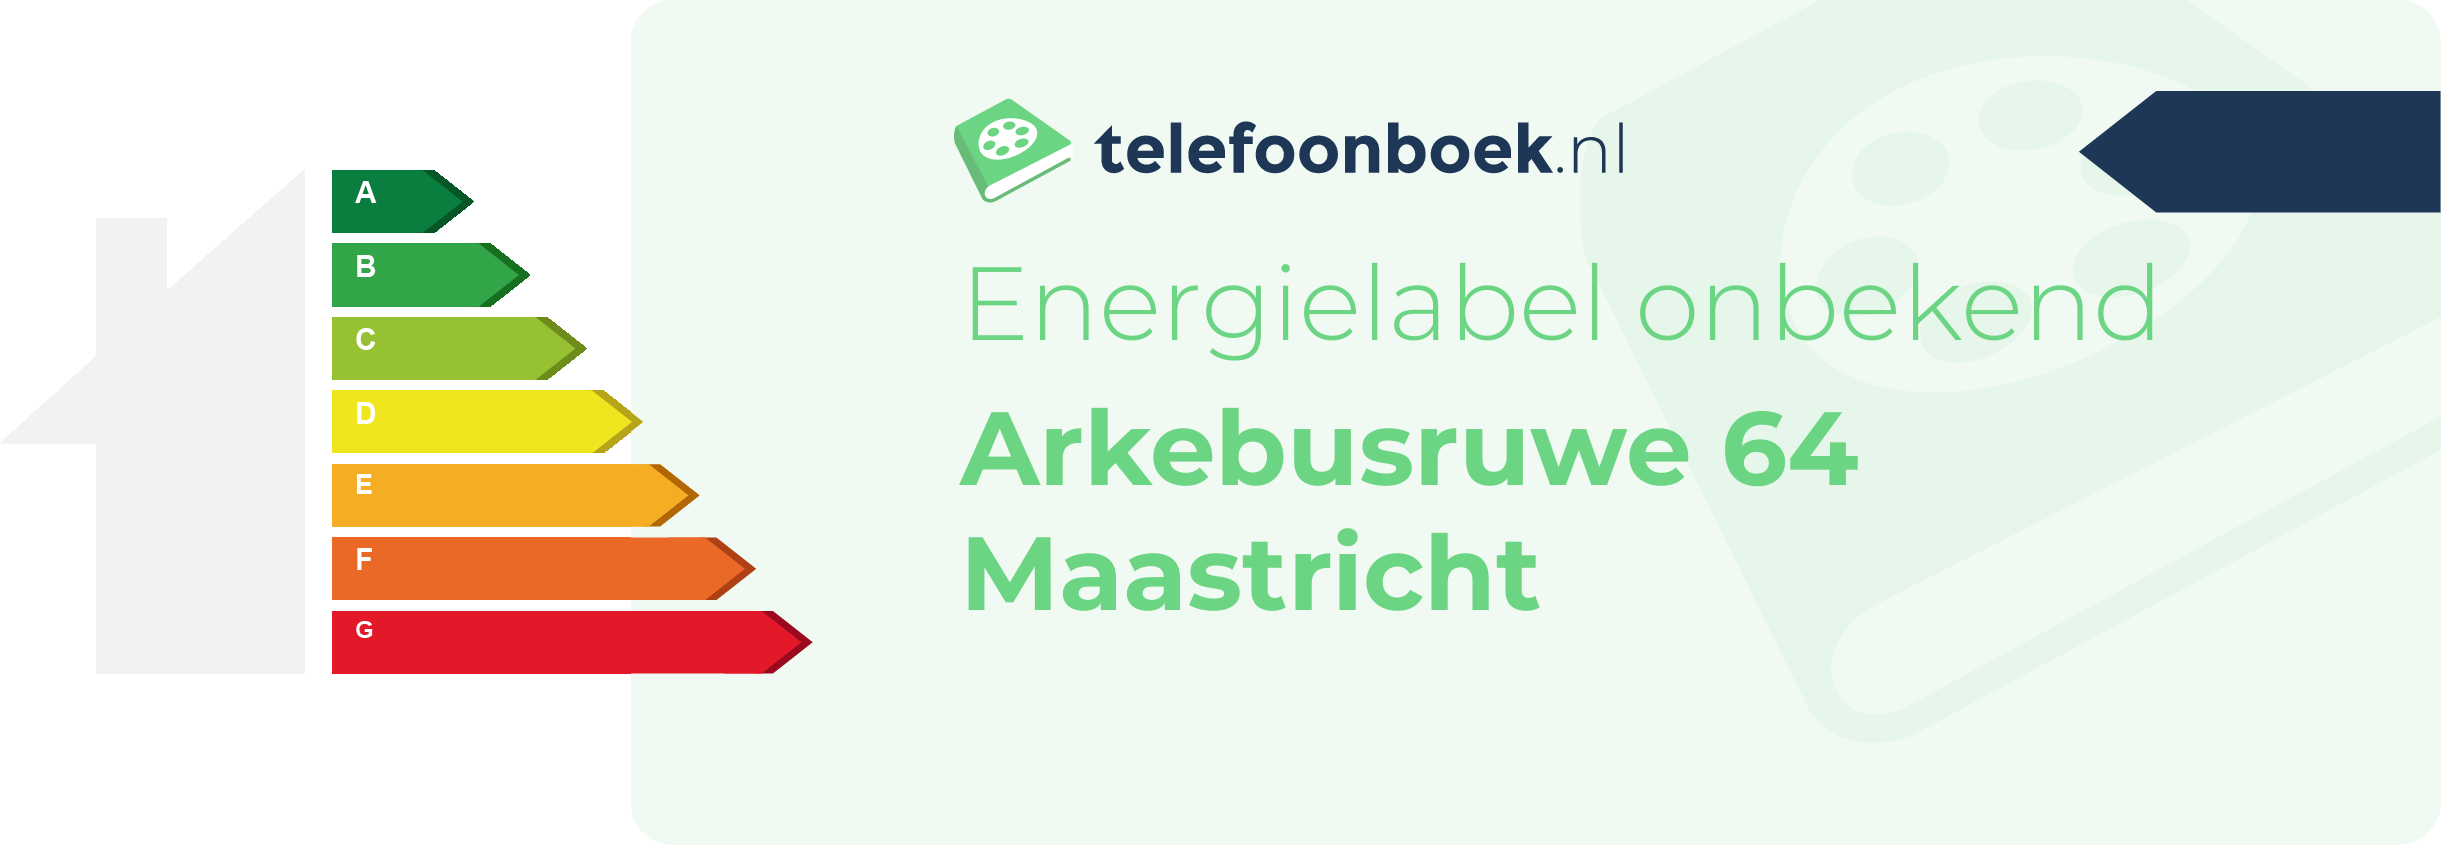 Energielabel Arkebusruwe 64 Maastricht